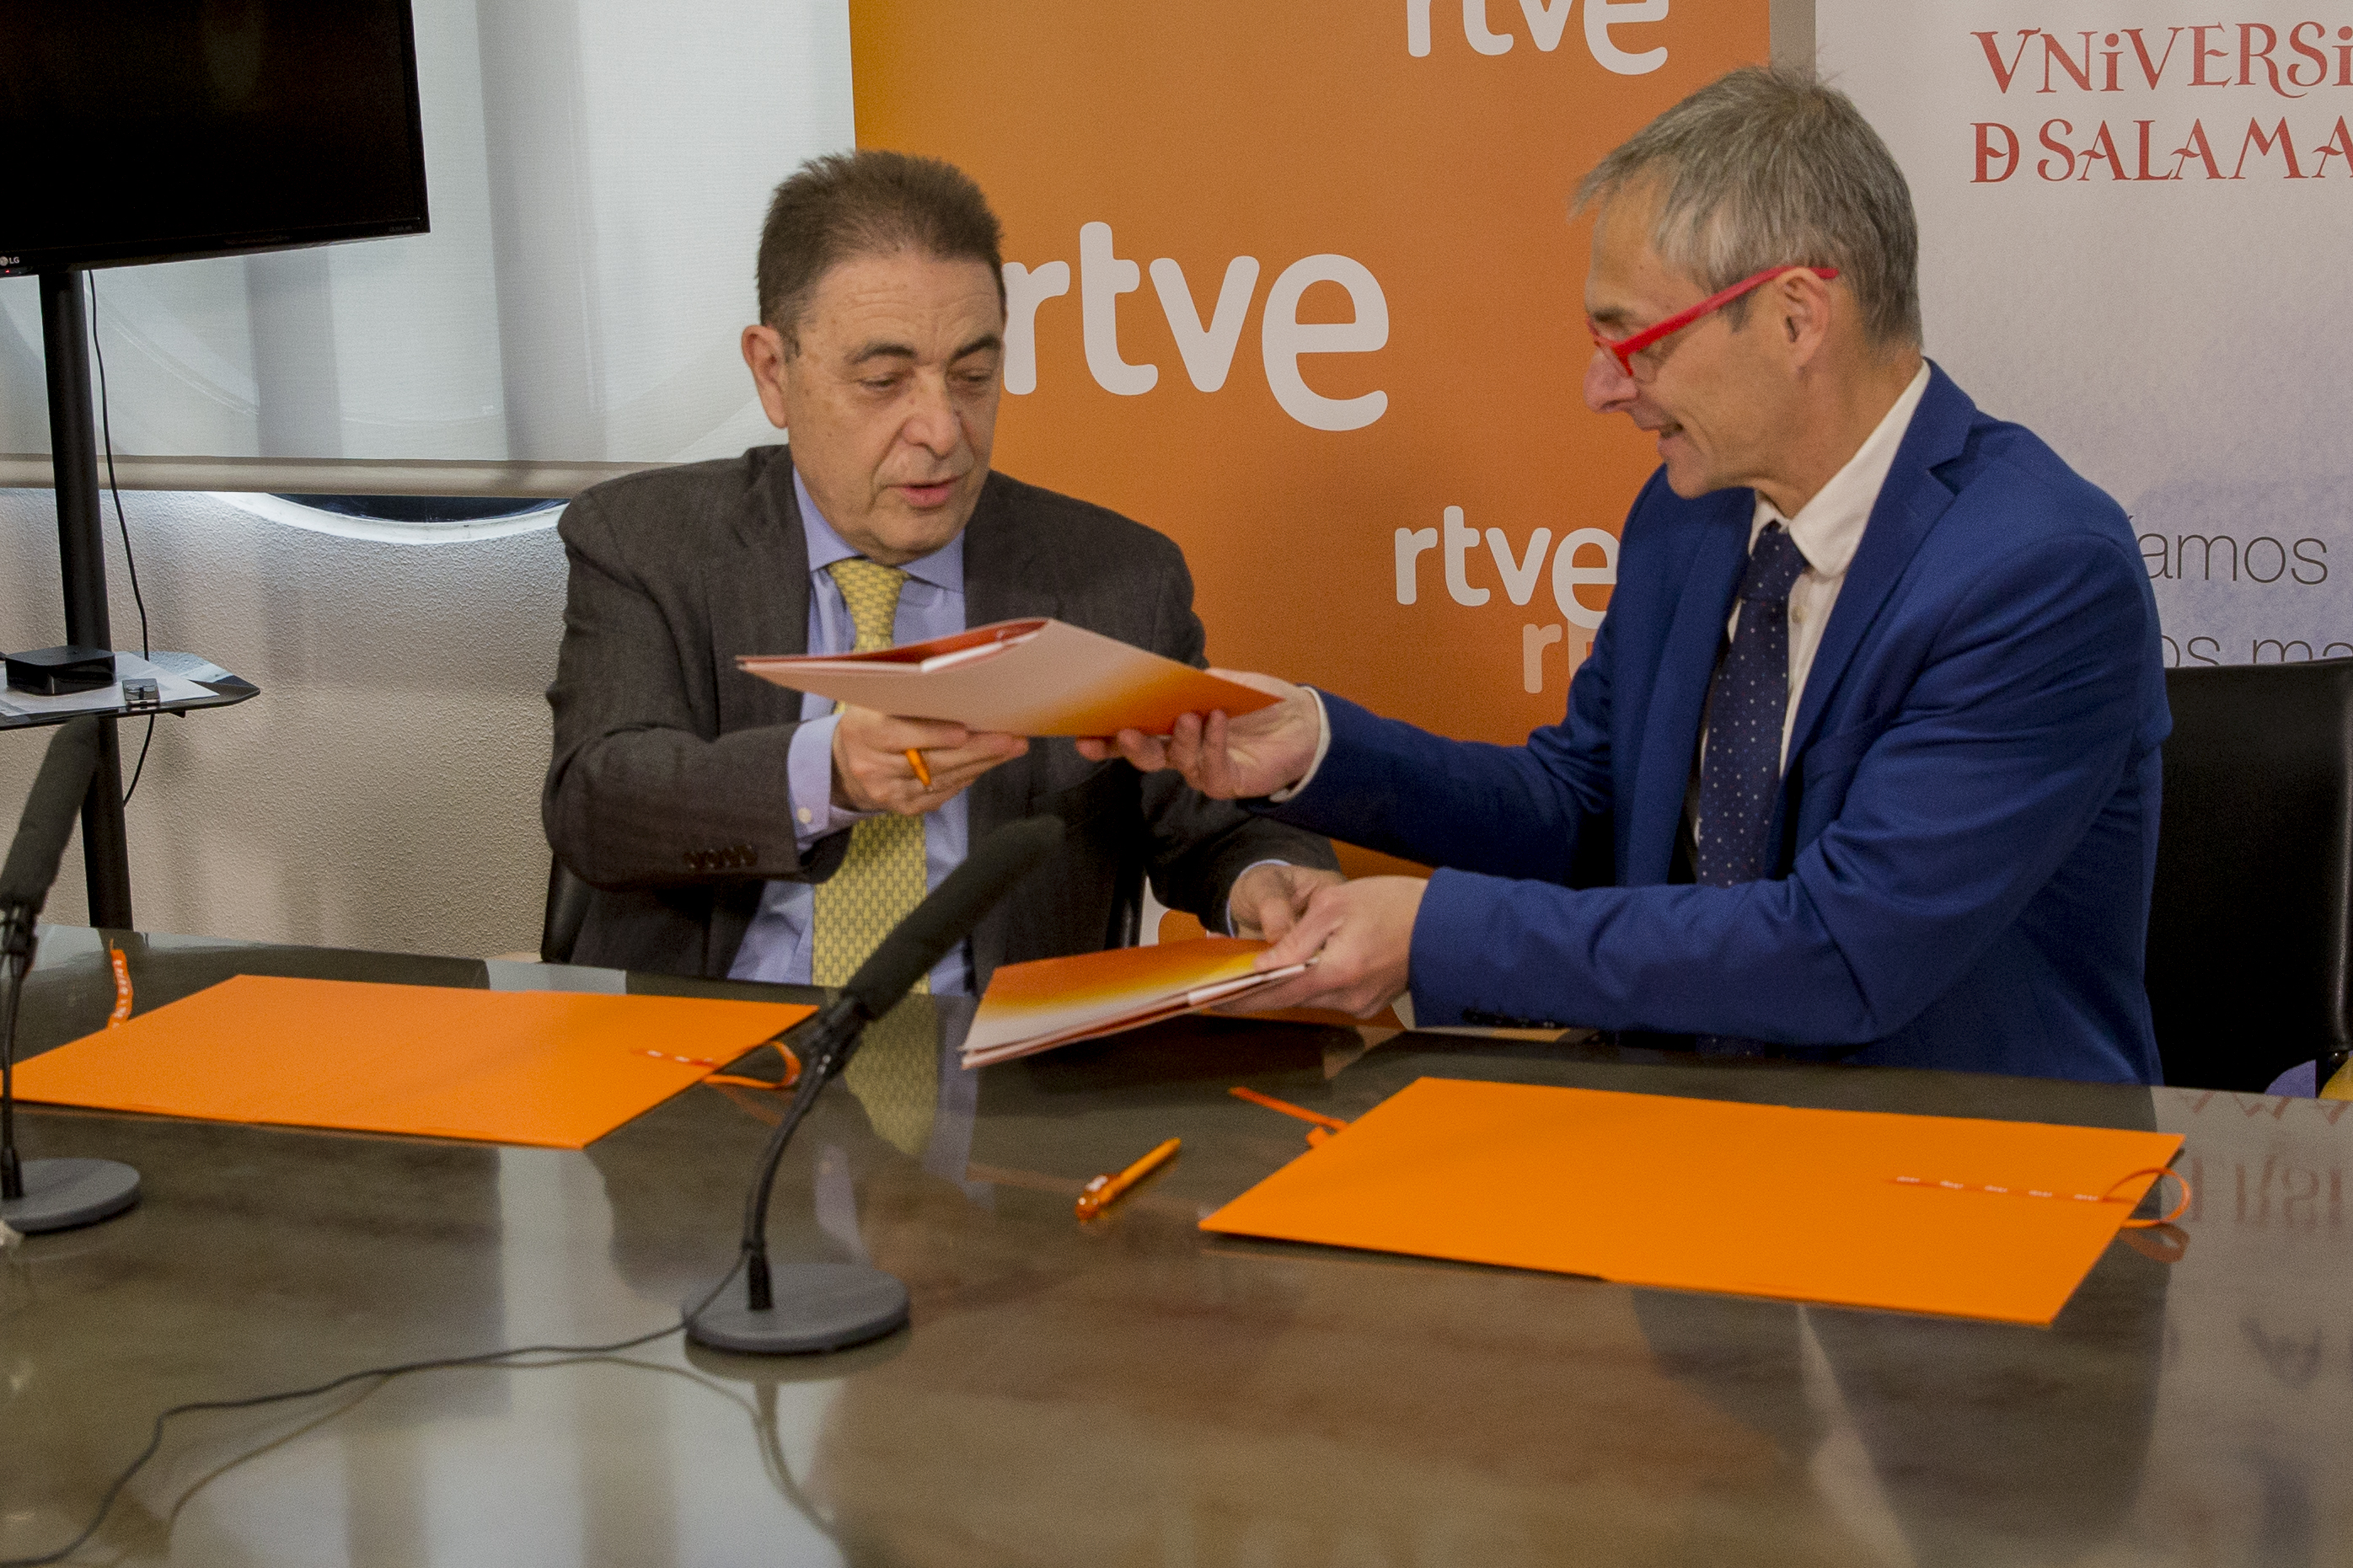 La Universidad de Salamanca y la Corporación RTVE firman un convenio para la creación de una cátedra sobre emprendimiento tecnológico en el sector media